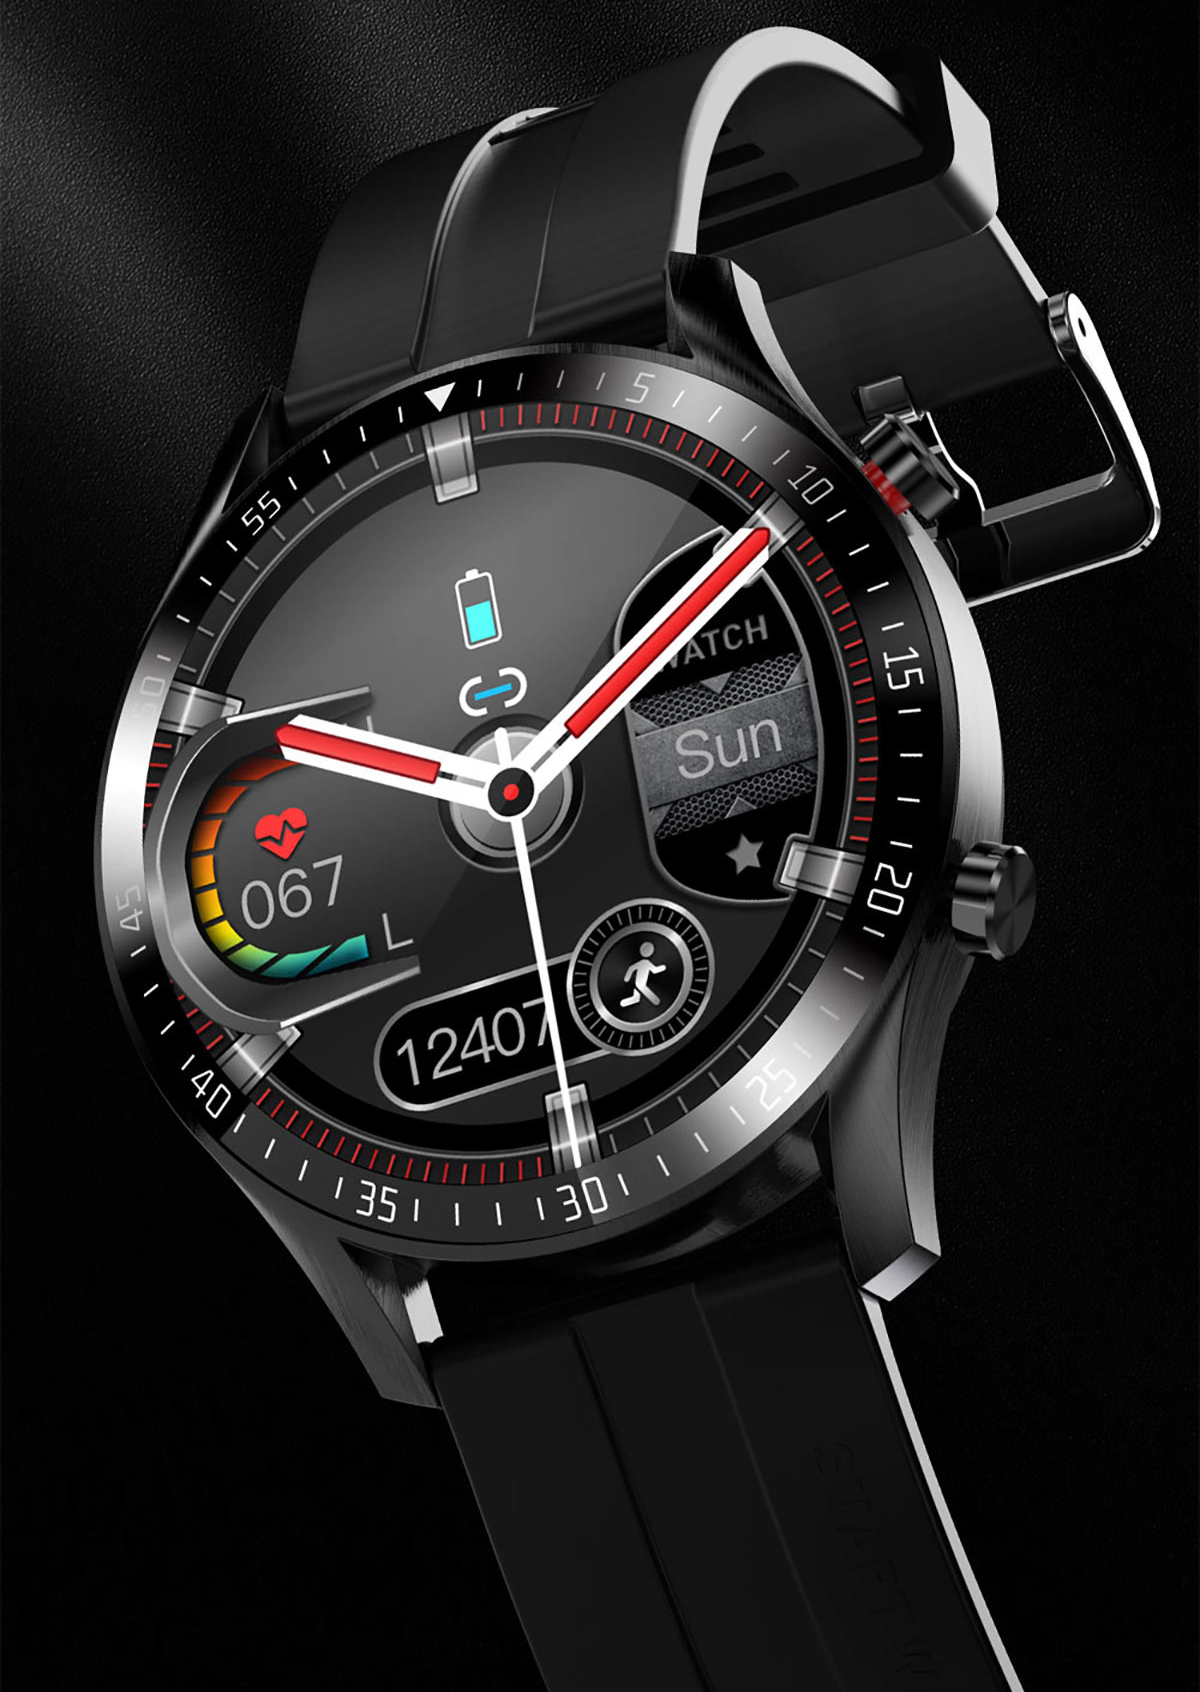 ZM08 BT Call Smart Watch Ins 01